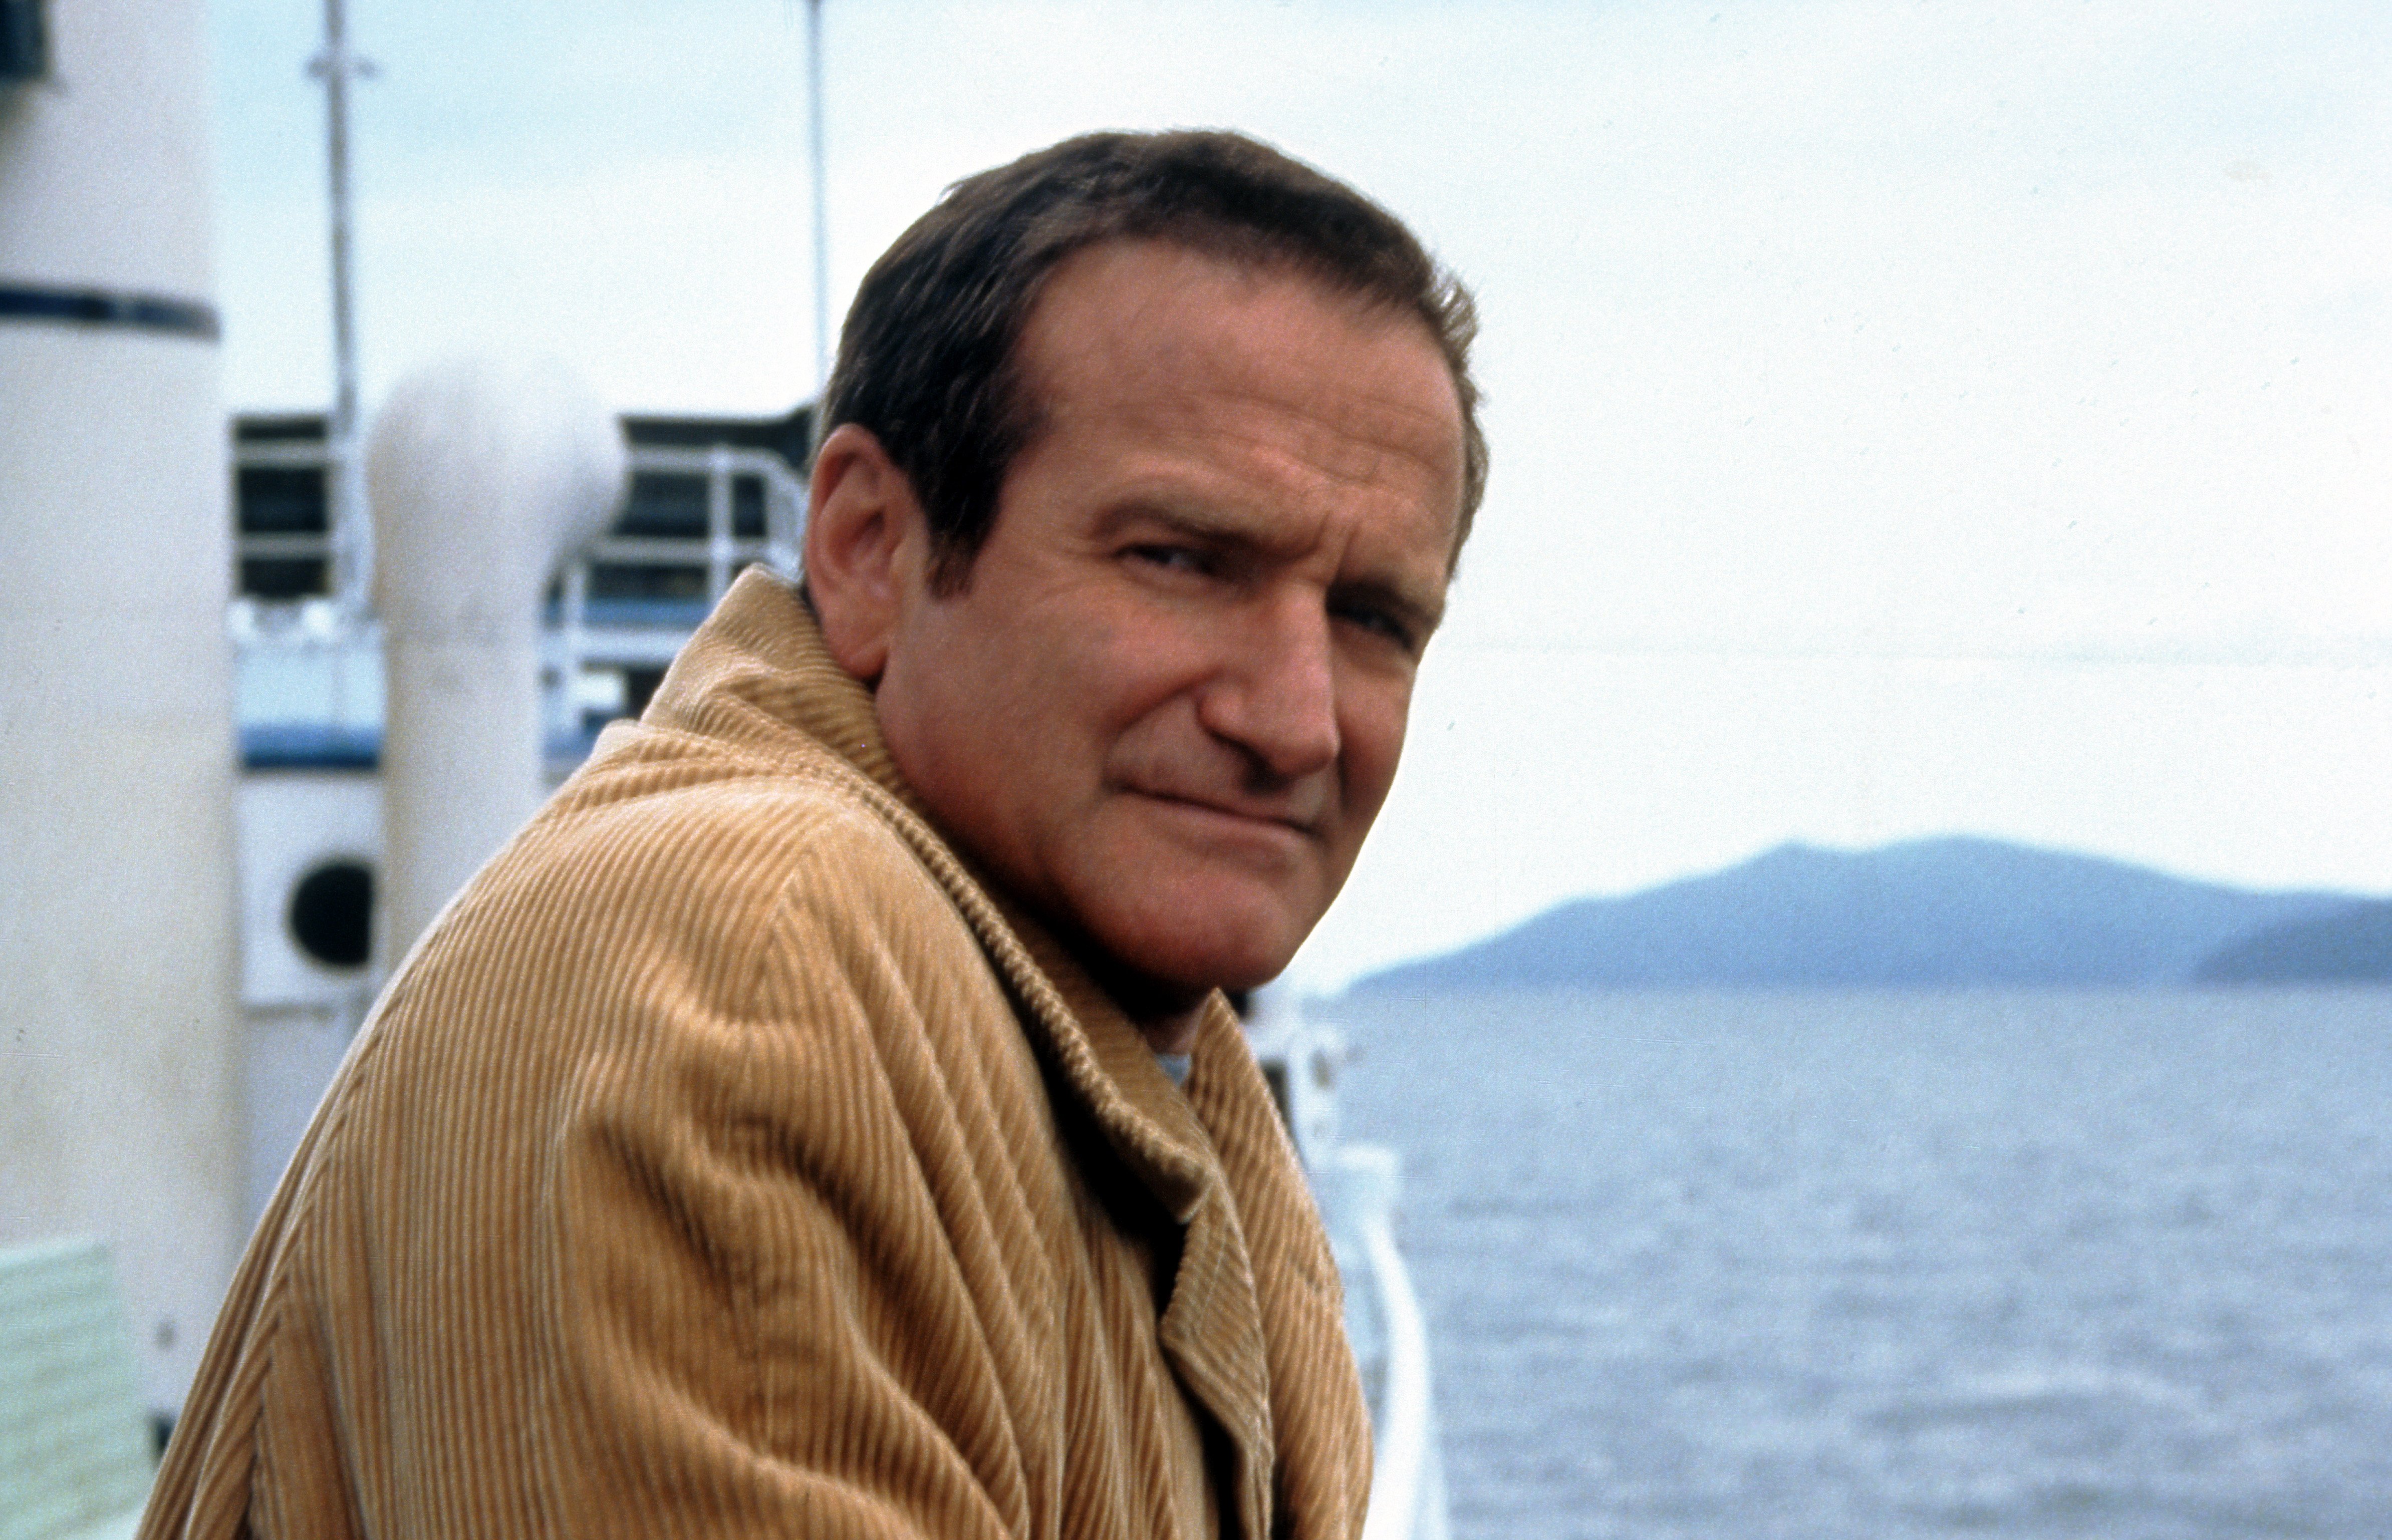 Robin Williams sur un bateau dans une scène du film "Insomnia" (2002) | Source : Getty Images